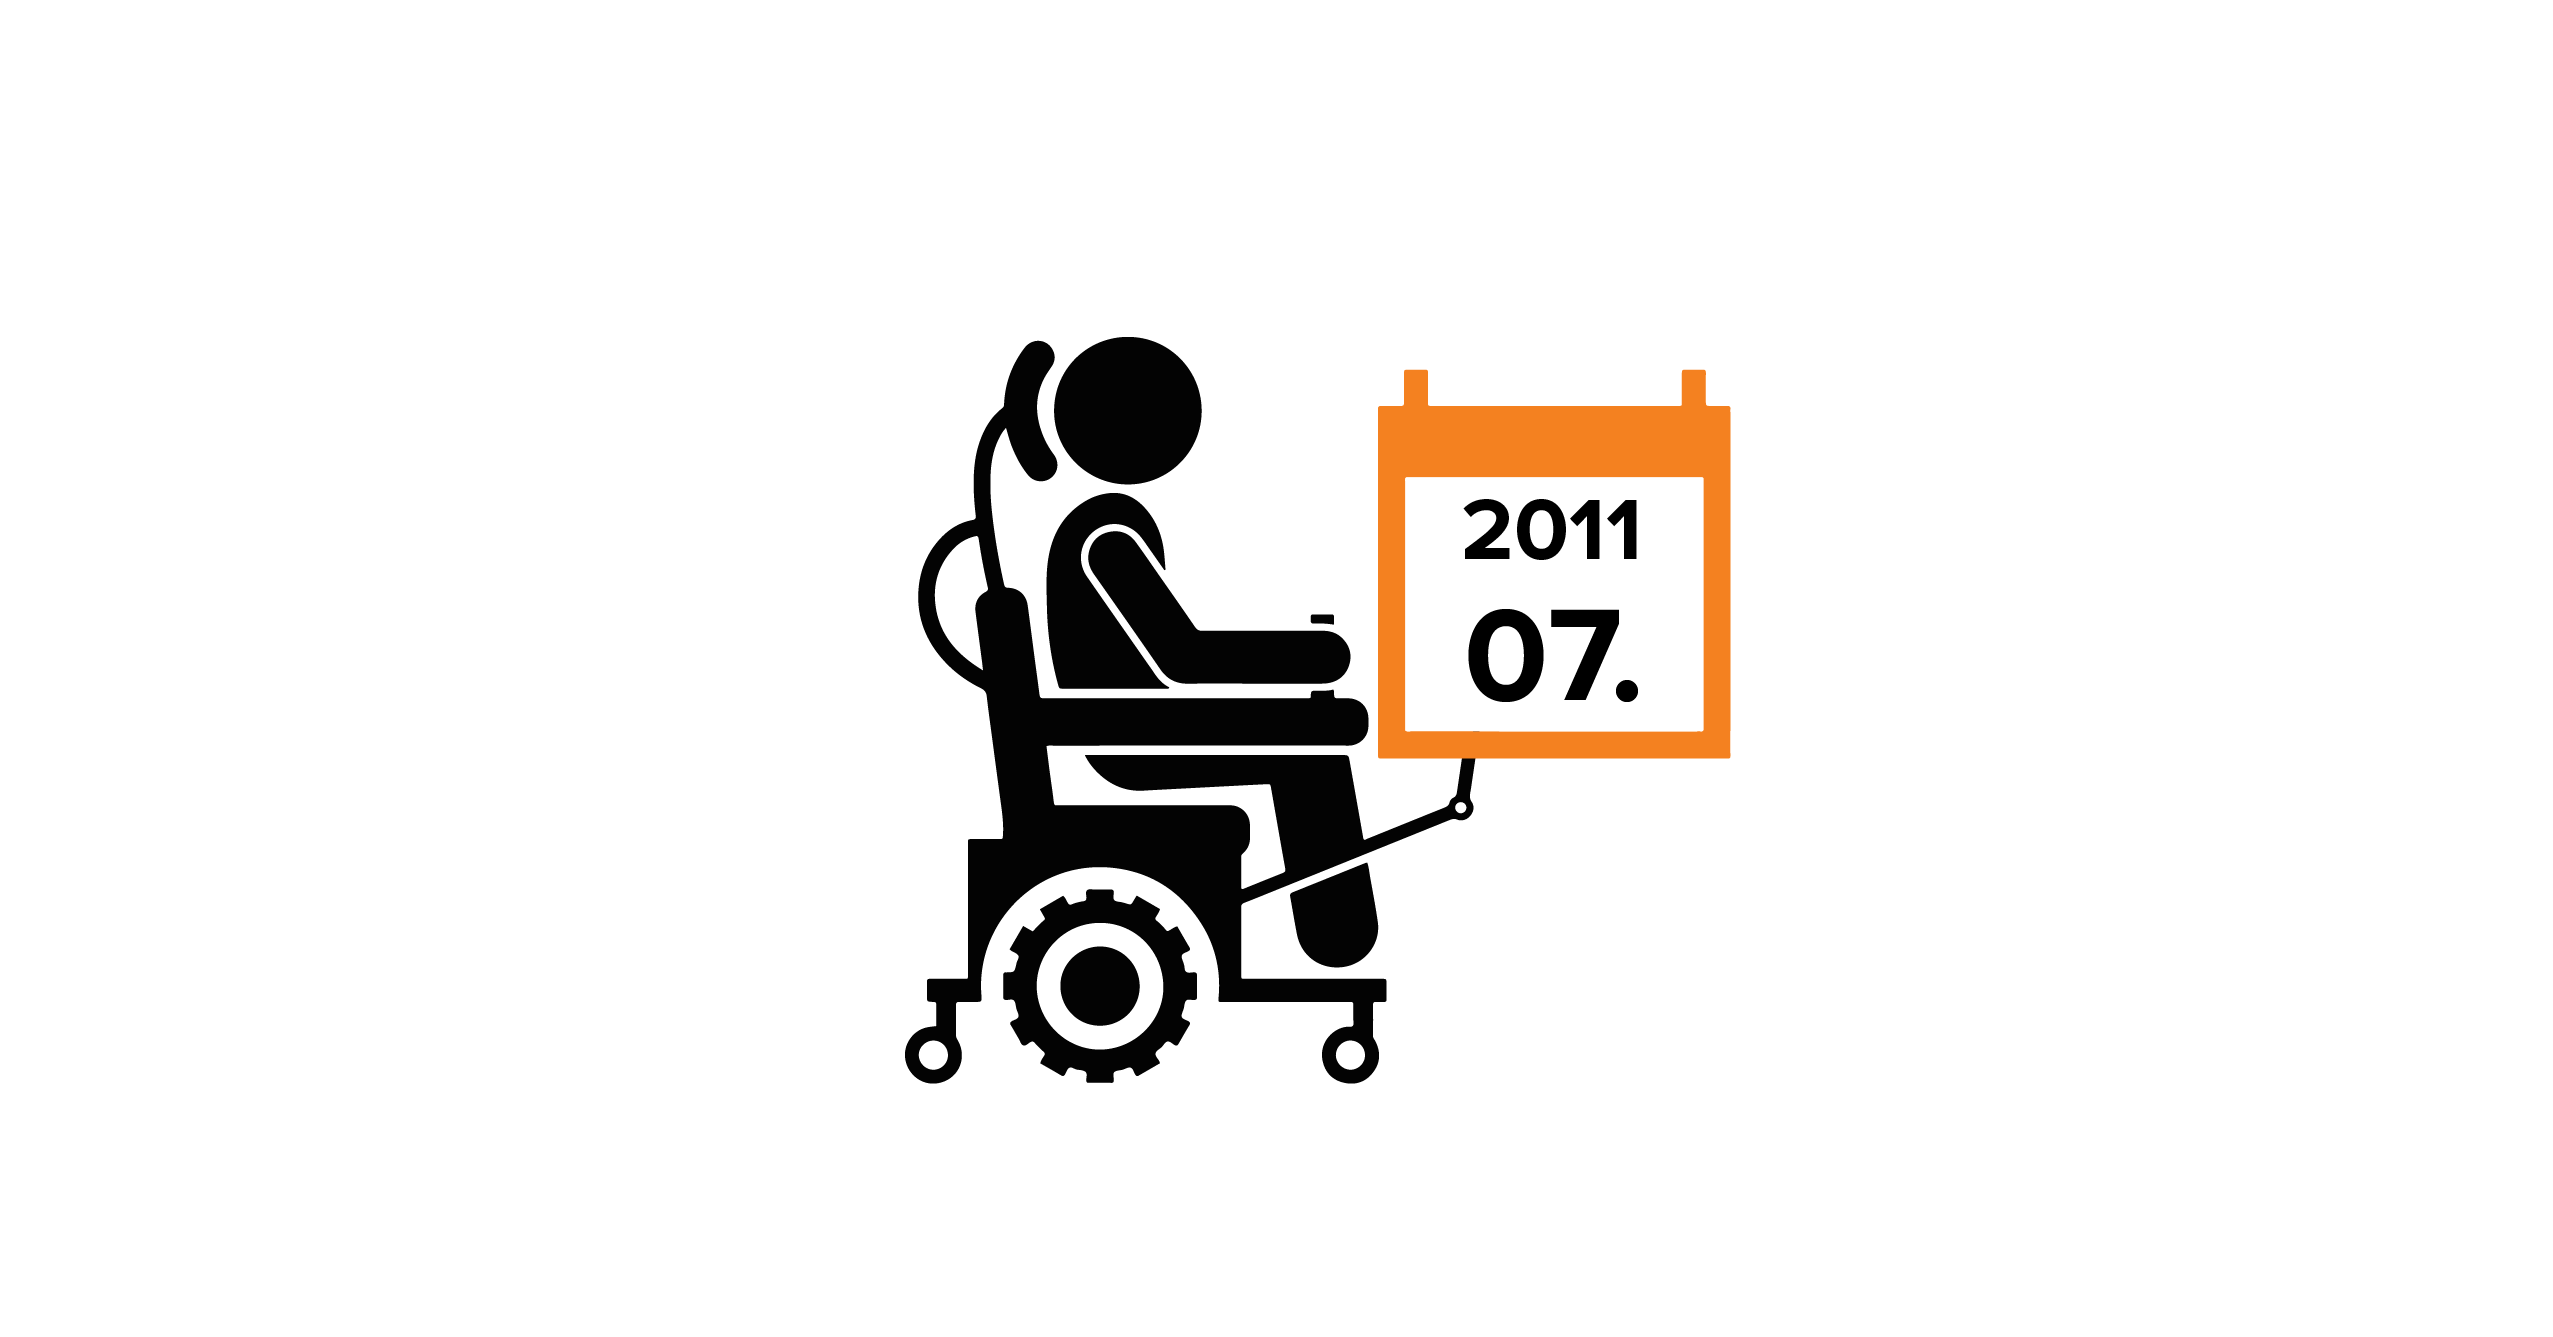 Na grafice człowiek na wózku elektrycznym trzymający kalendarz z datą 07.2011